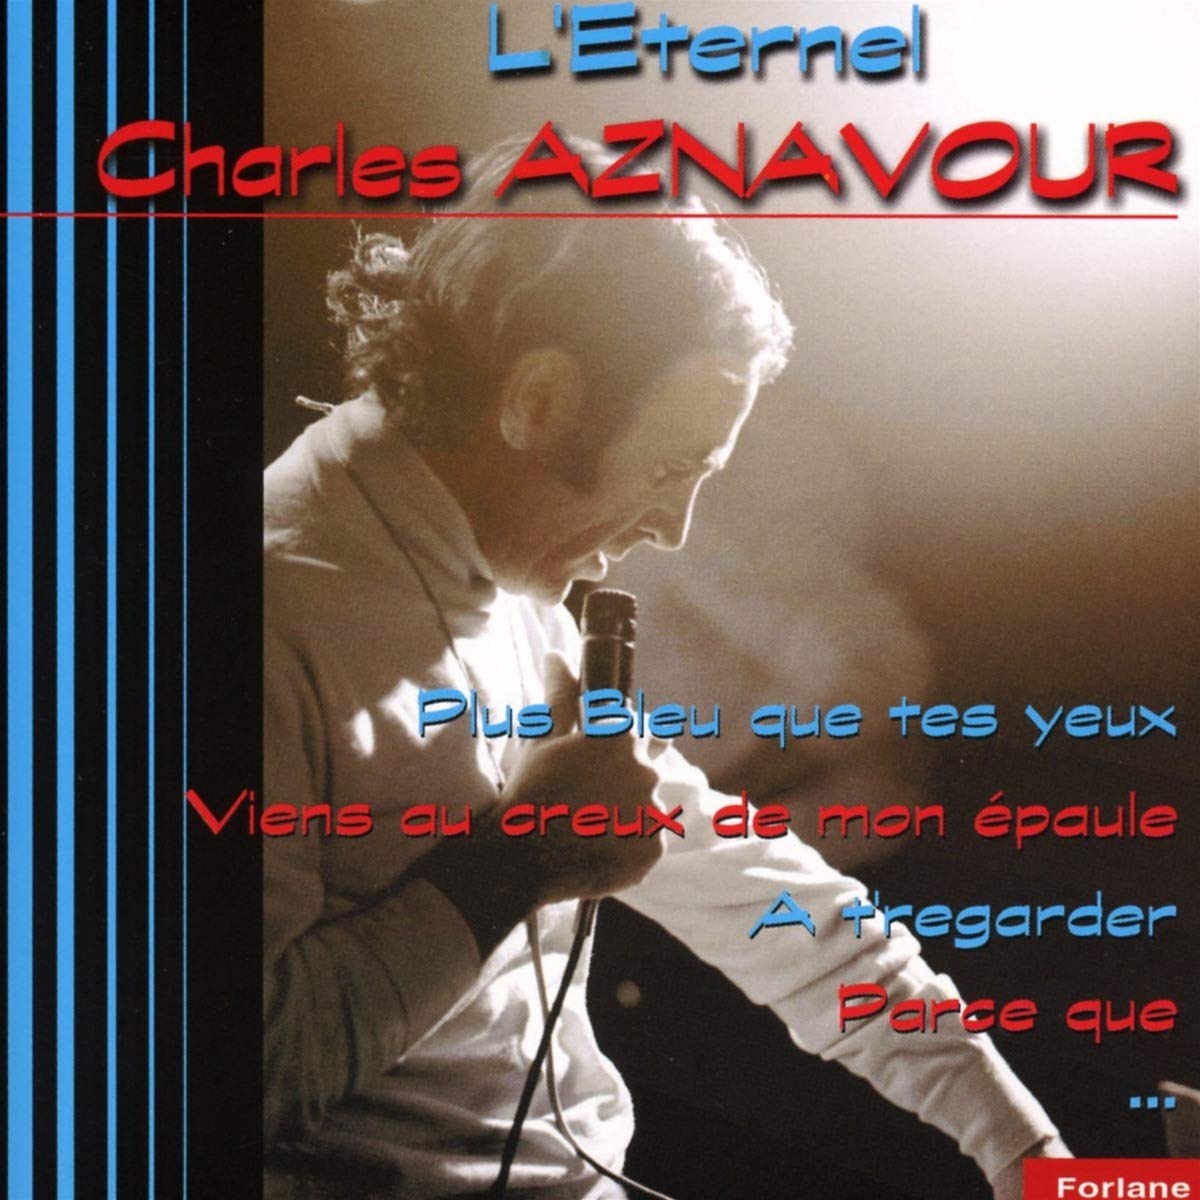 CD Charles Aznavour - L eternel